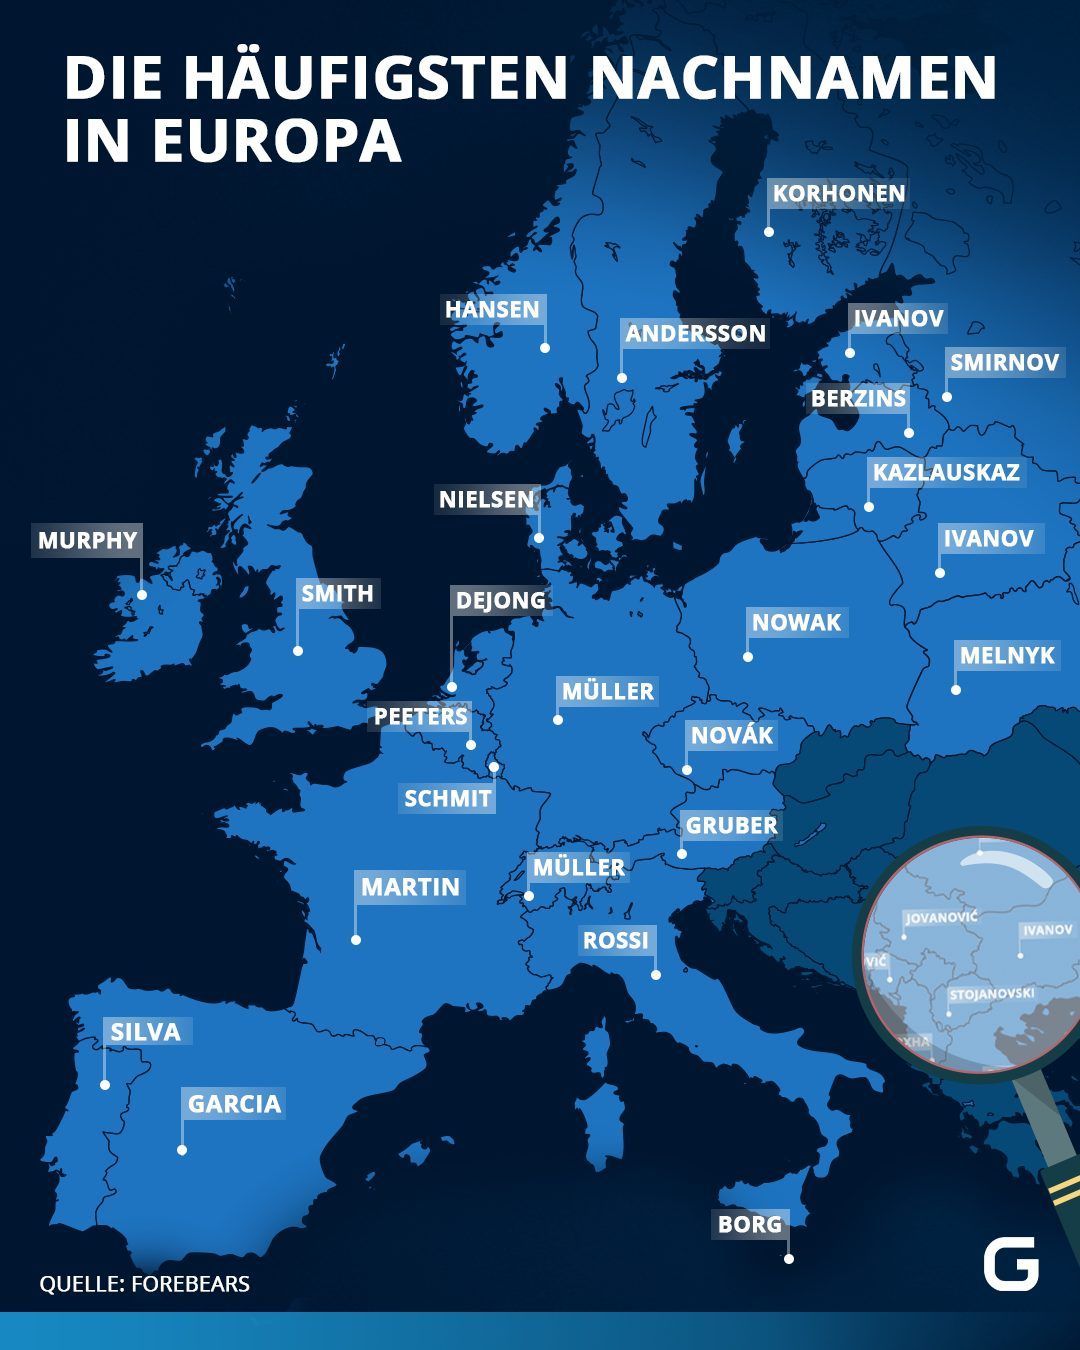 Die häufigsten Nachnamen in Europa unterteilt nach Ländern.